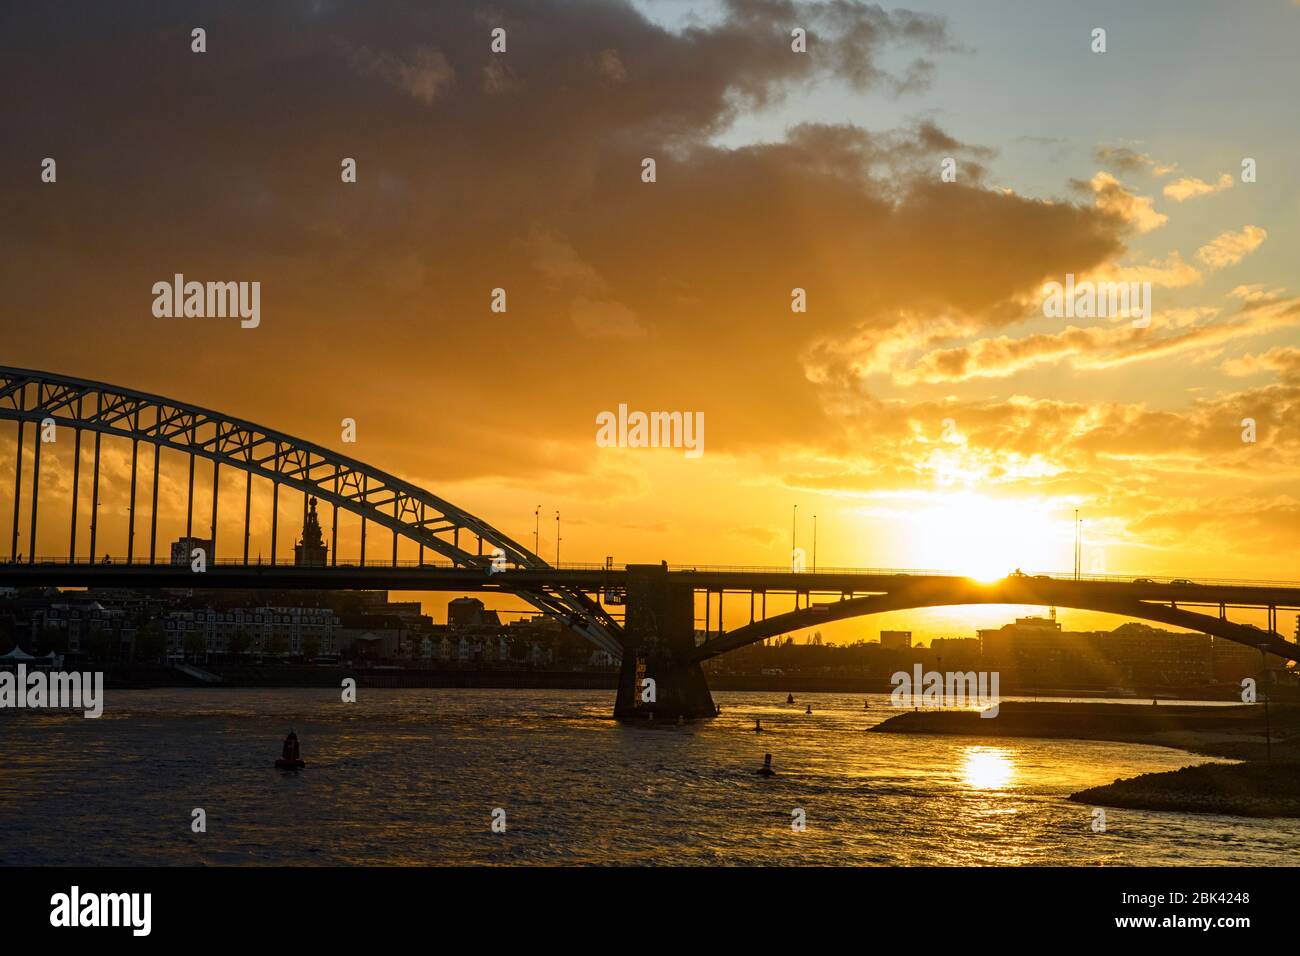 Waalbrug Bridge over the Waal River at sunset, Nijmegen, Gelderland, Netherlands Stock Photo